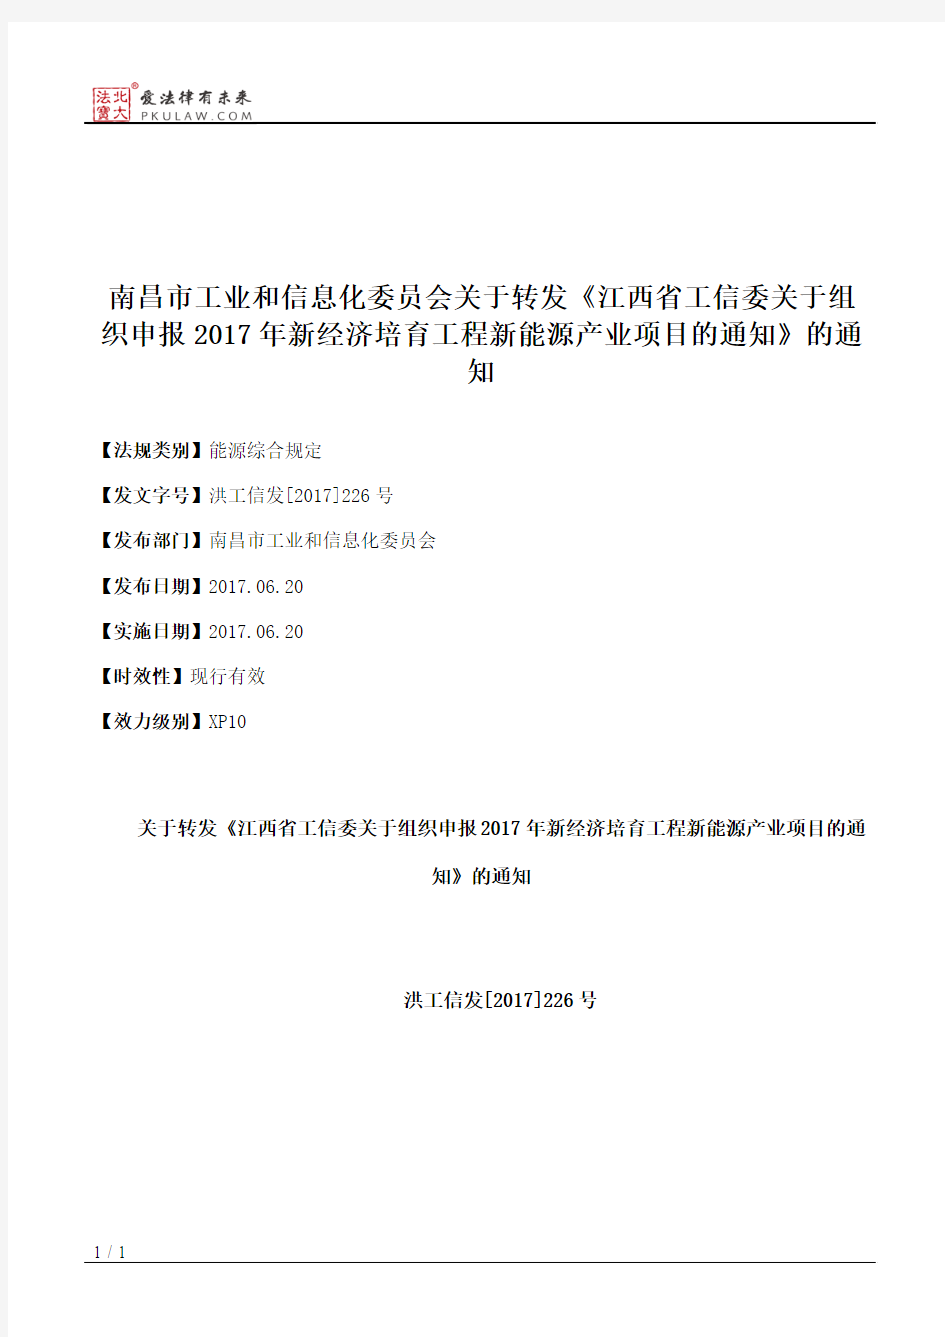 南昌市工业和信息化委员会关于转发《江西省工信委关于组织申报201